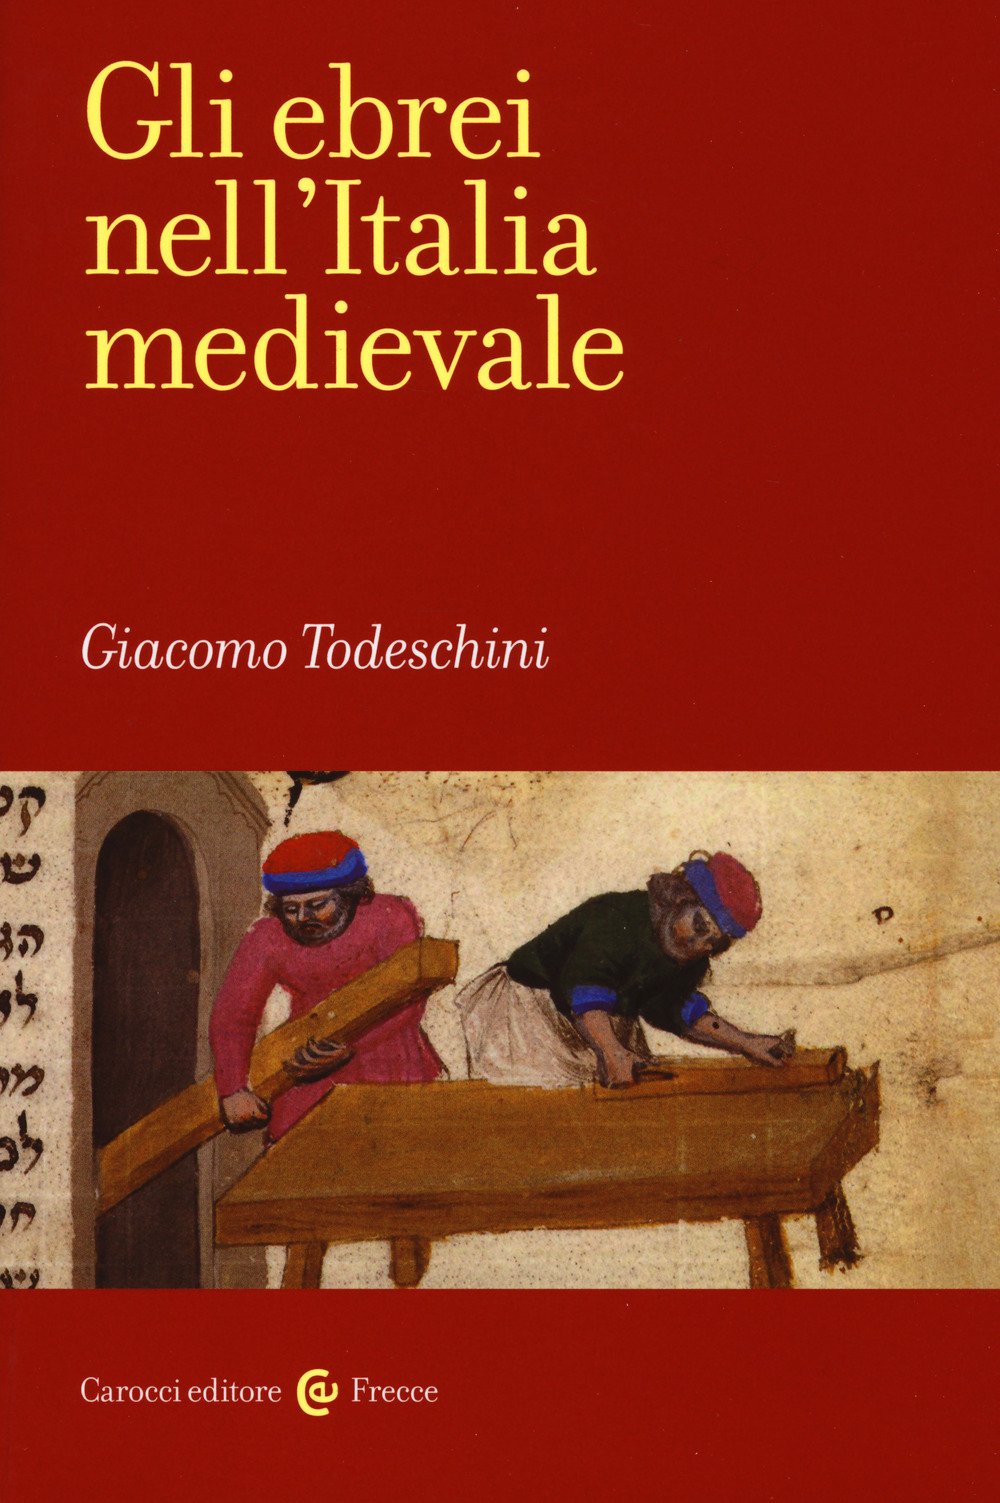 Libri il ruolo socioculturale degli ebrei nell'Italia medievale